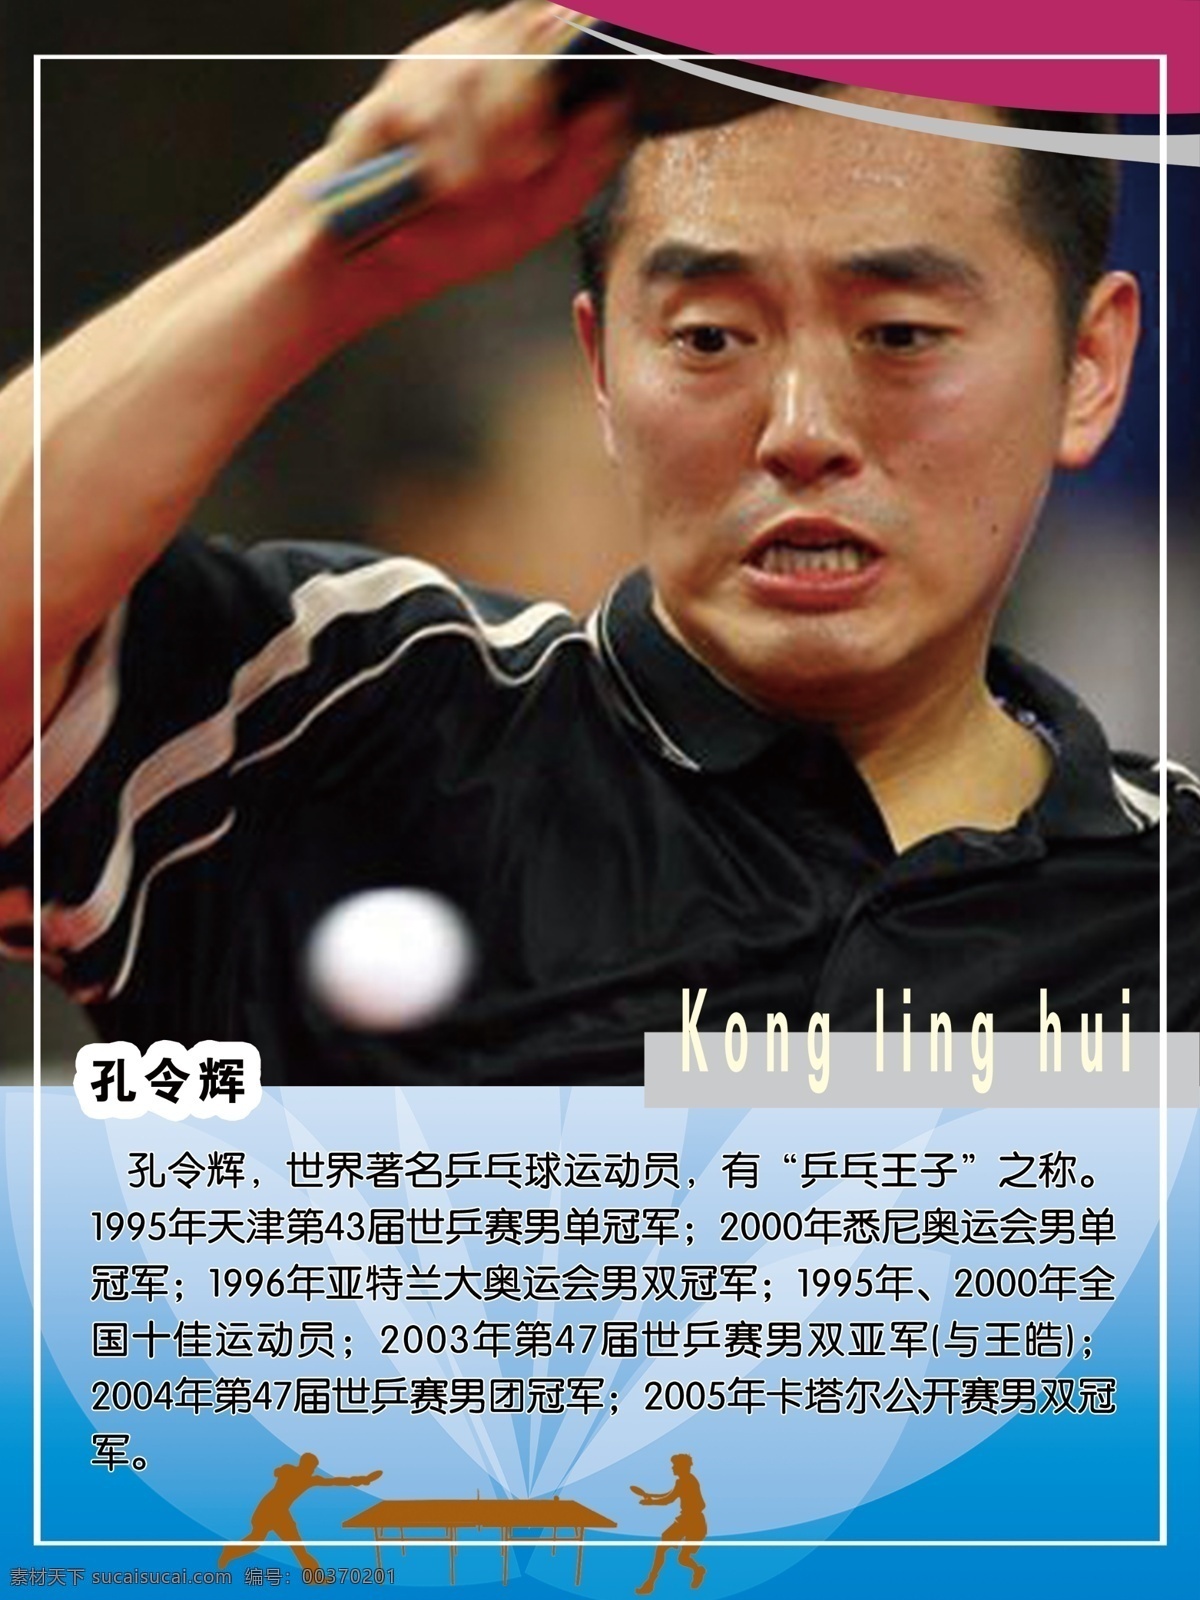 孔令辉 乒乓球运动员 乒乓王子 奥运会 悉尼奥运会 男双冠军 男双亚军 男团冠军 分层